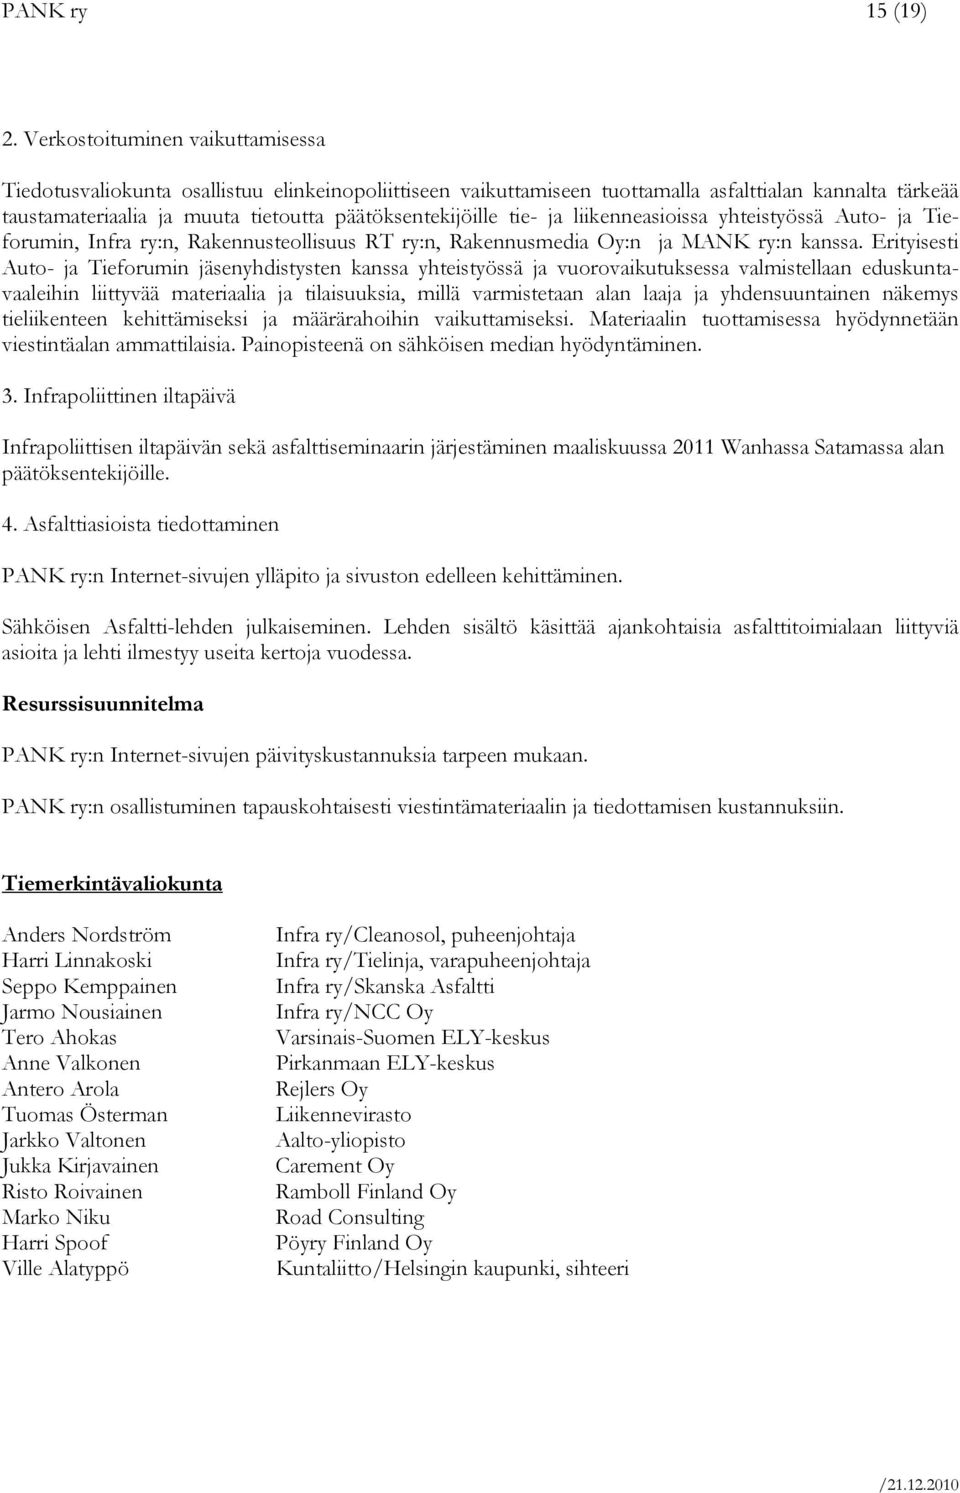 tie- ja liikenneasioissa yhteistyössä Auto- ja Tieforumin, Infra ry:n, Rakennusteollisuus RT ry:n, Rakennusmedia Oy:n ja MANK ry:n kanssa.